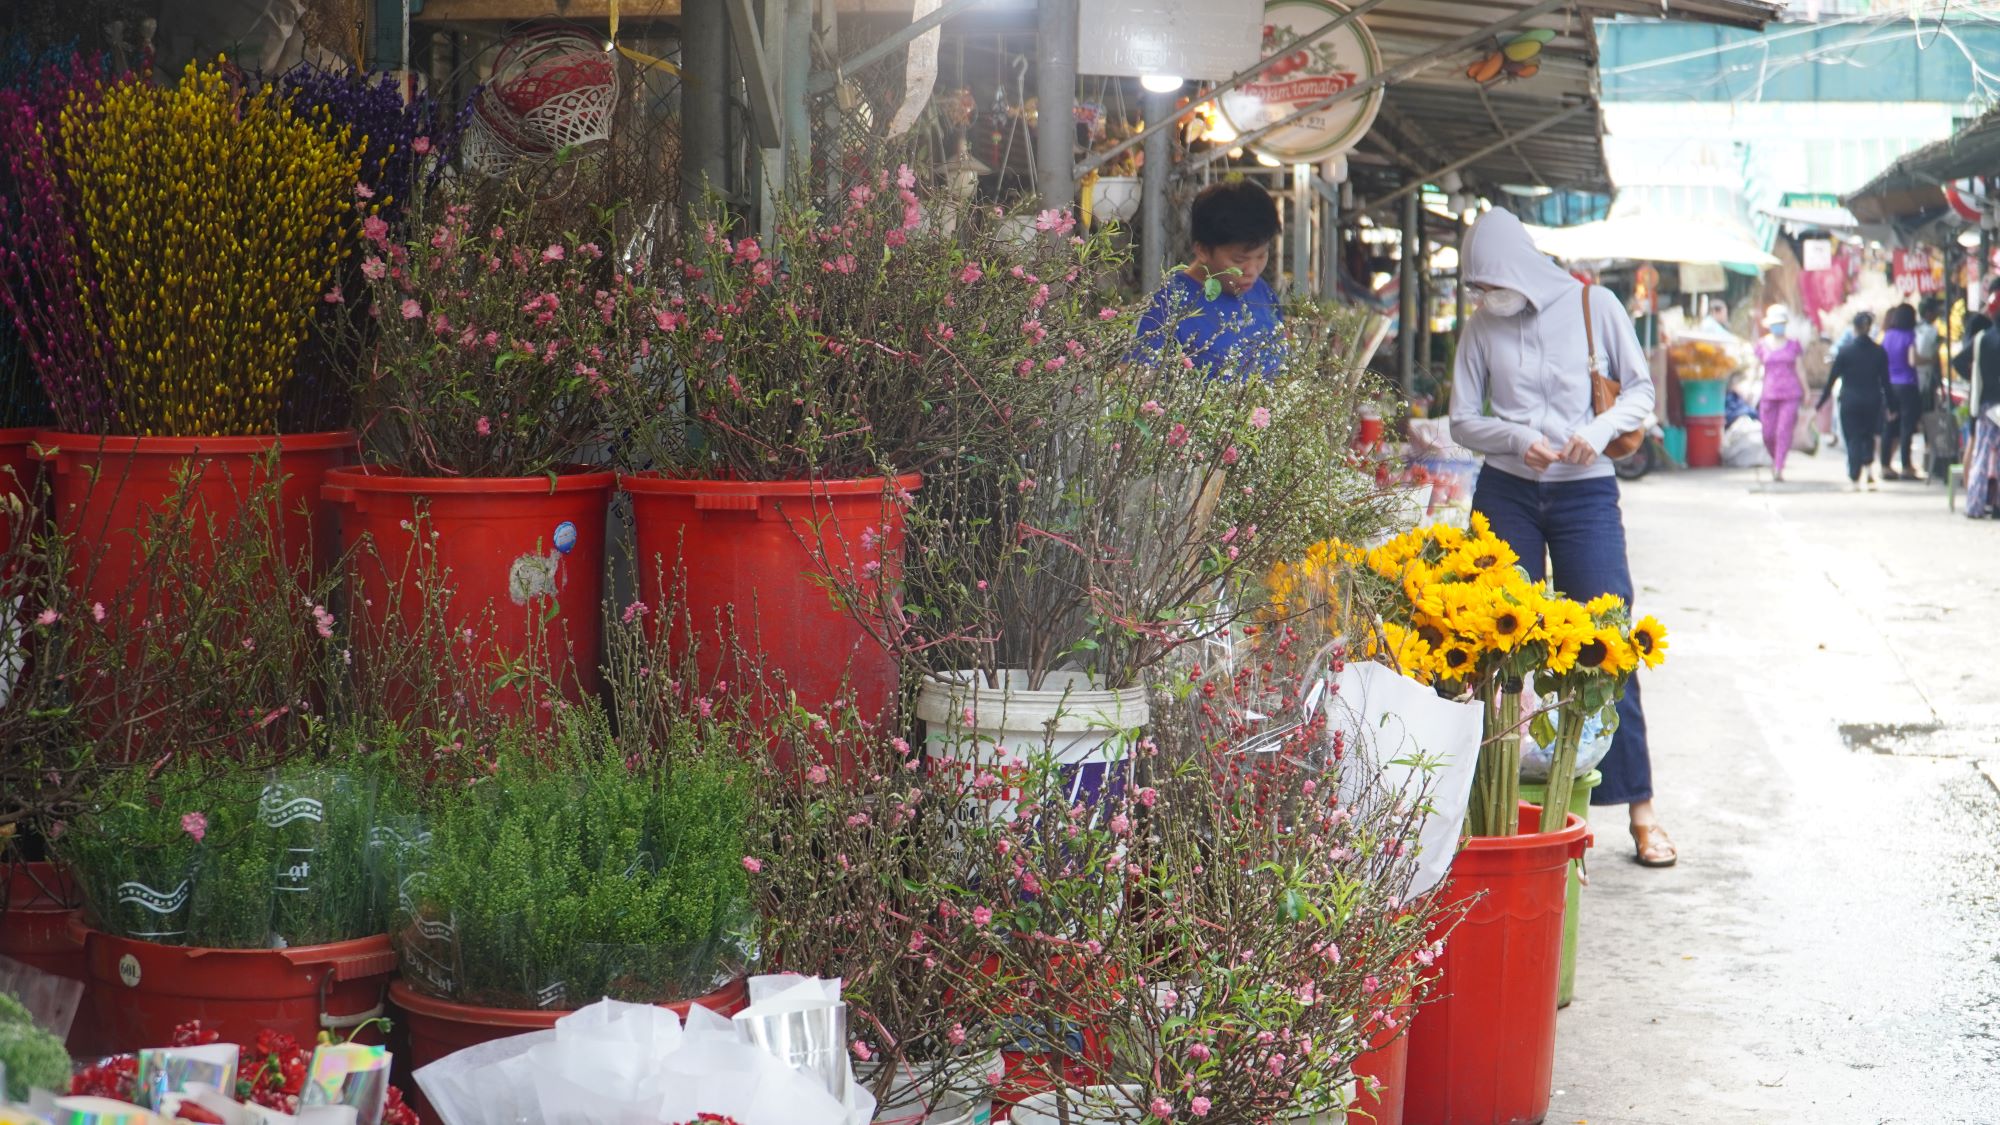 
Chợ hoa tươi đặc sắc giữa Sài thành lên hàng đón Tết- Ảnh 3.